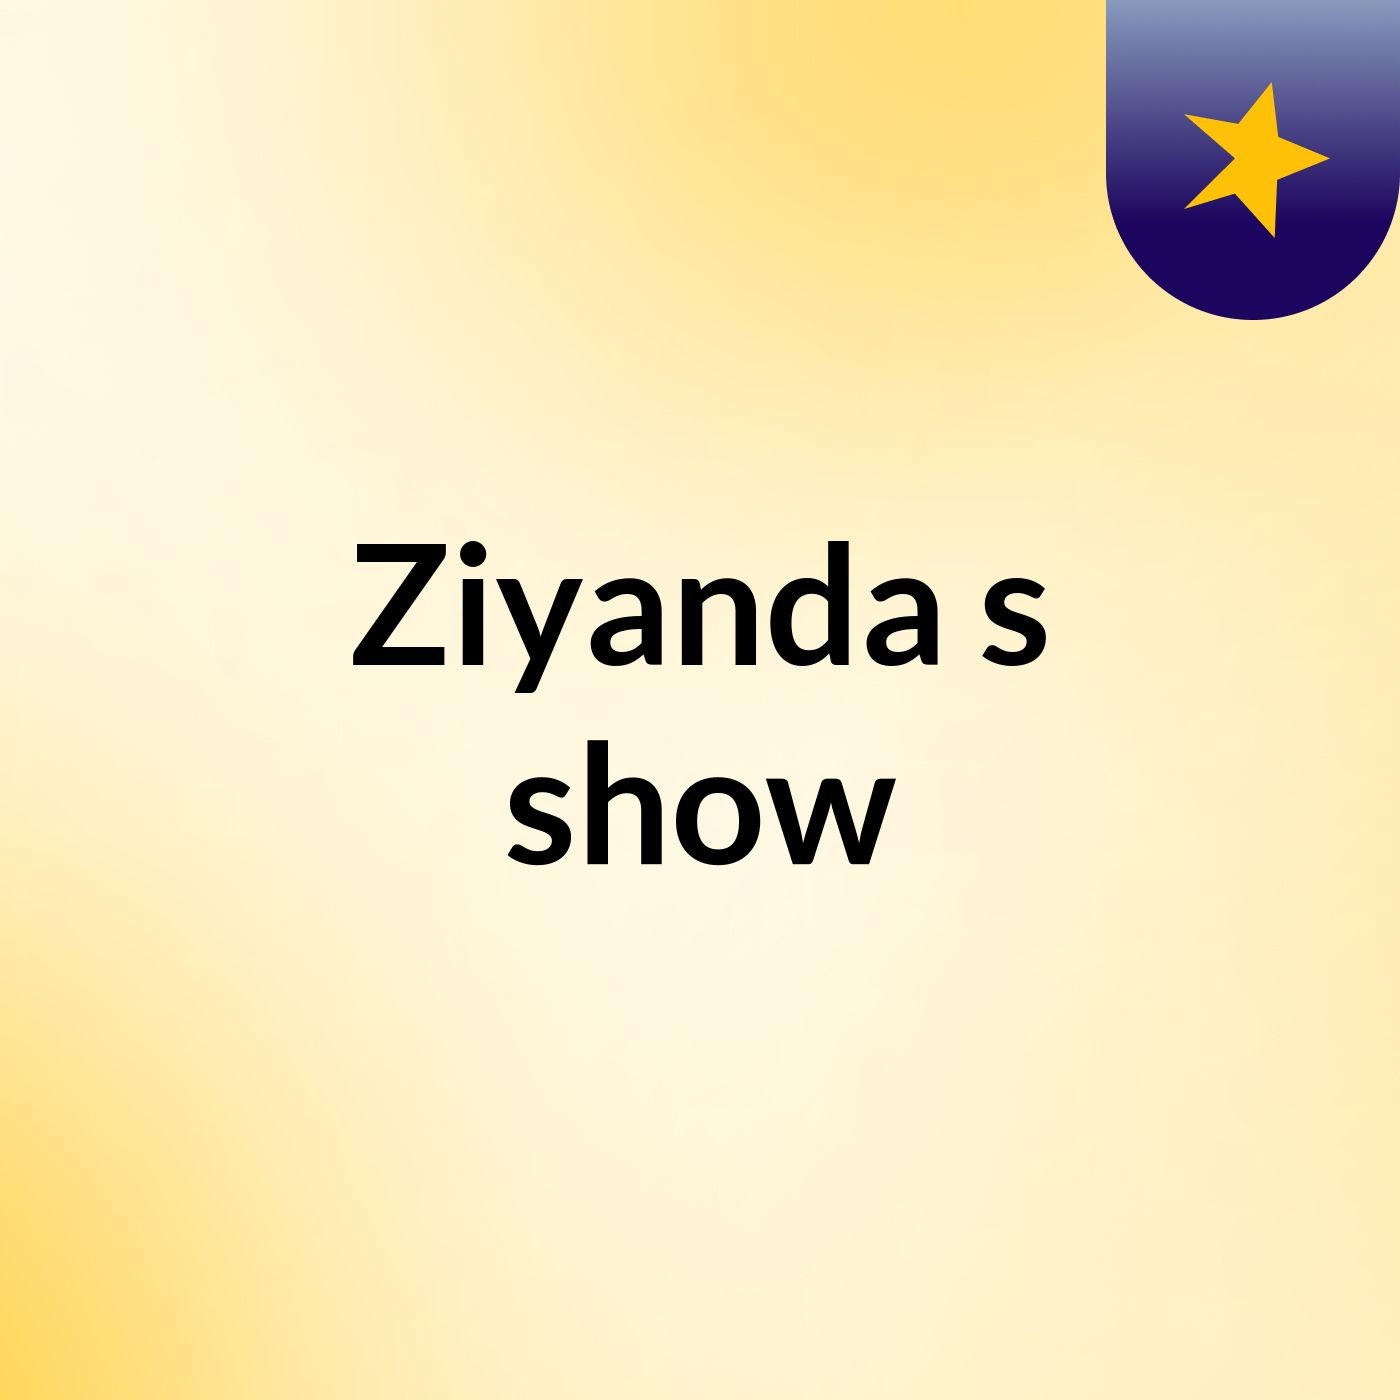 Ziyanda's show